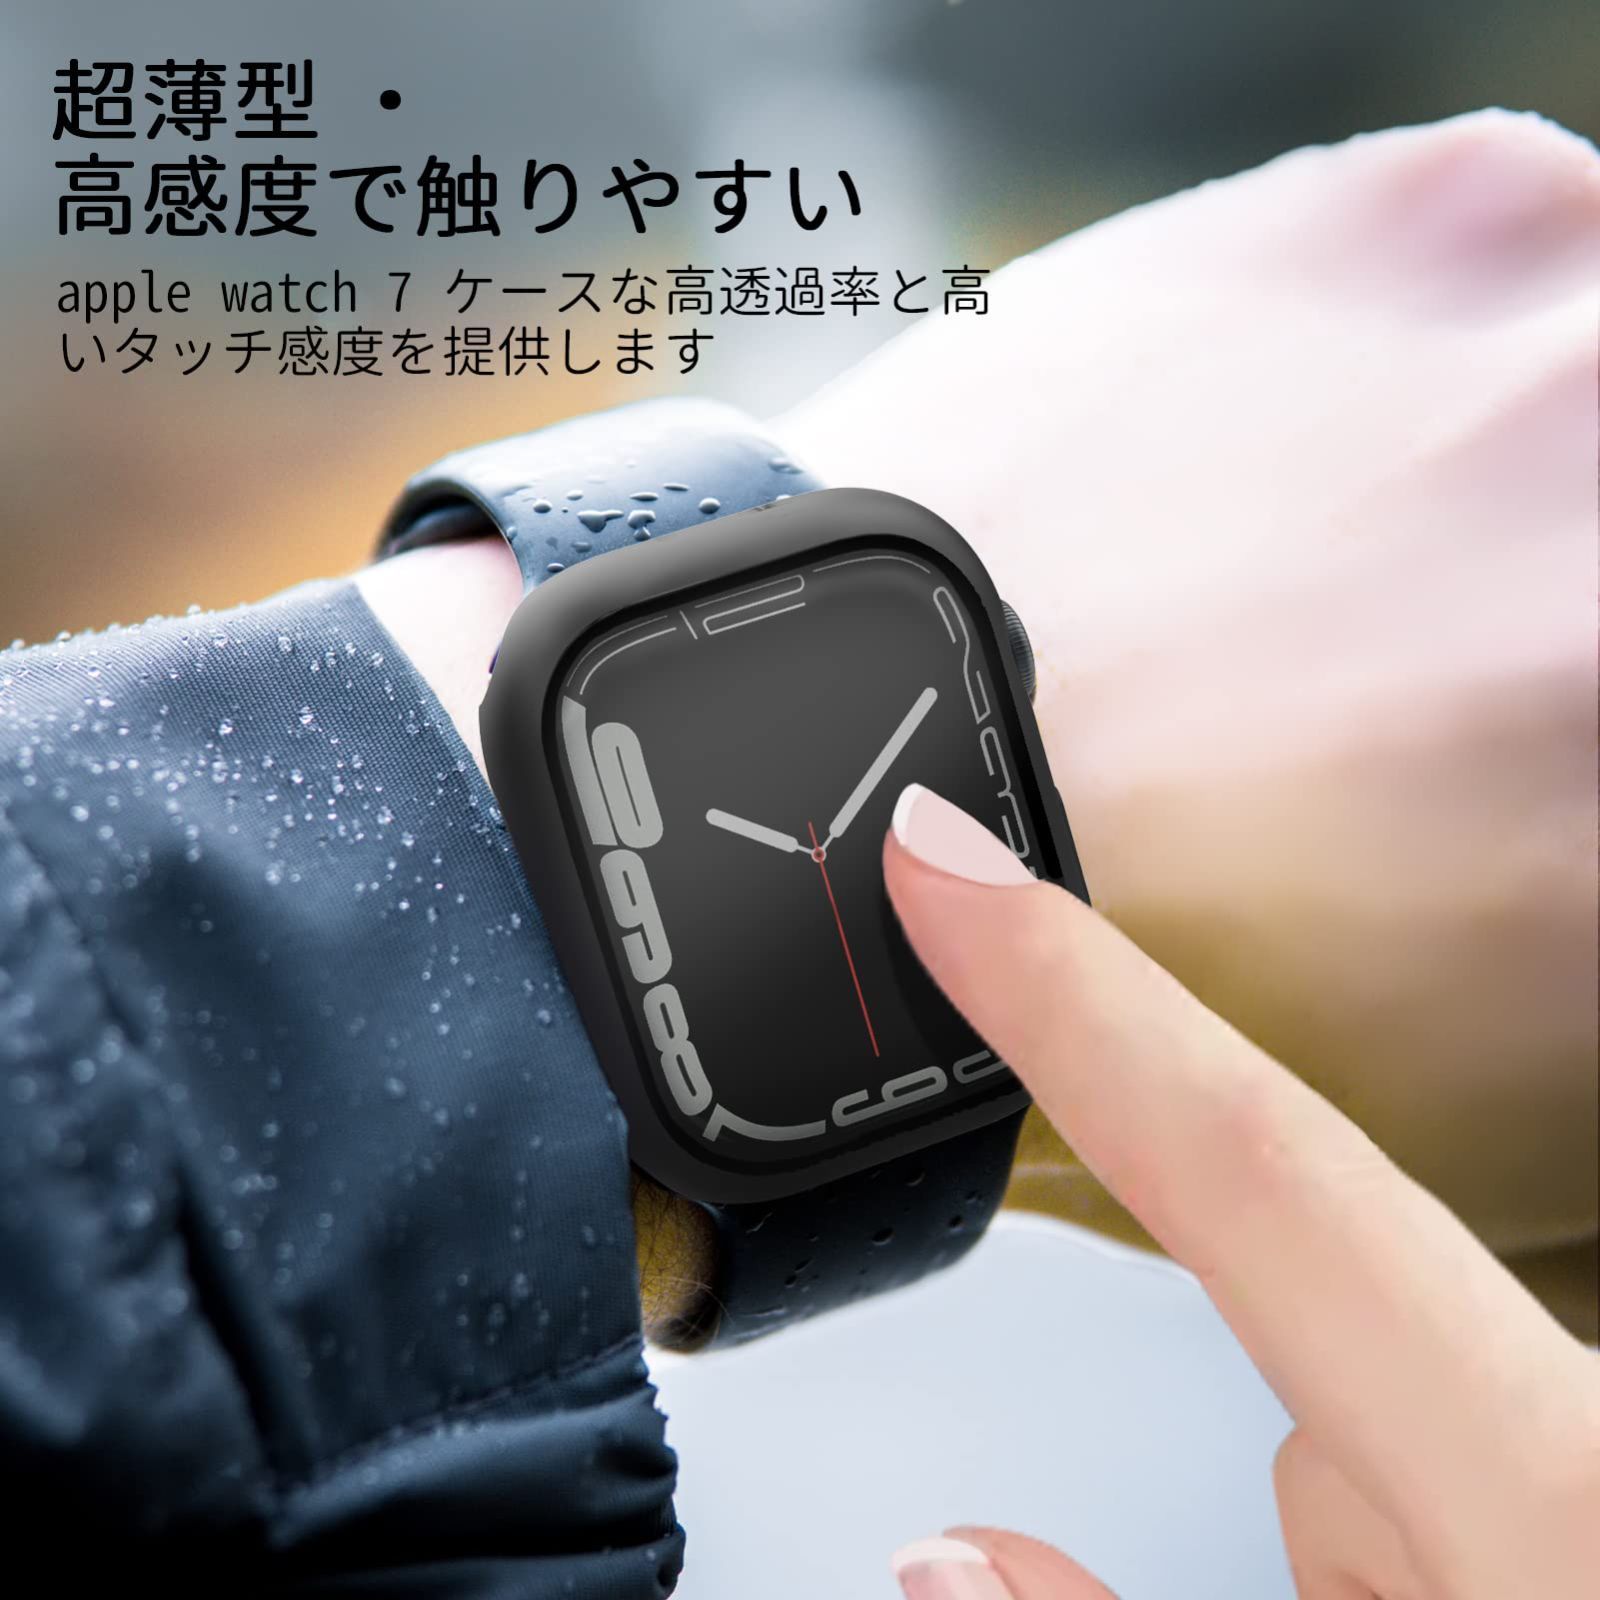 Apple Watch 40mm カバー クリア 黒 アップルウォッチ ケース